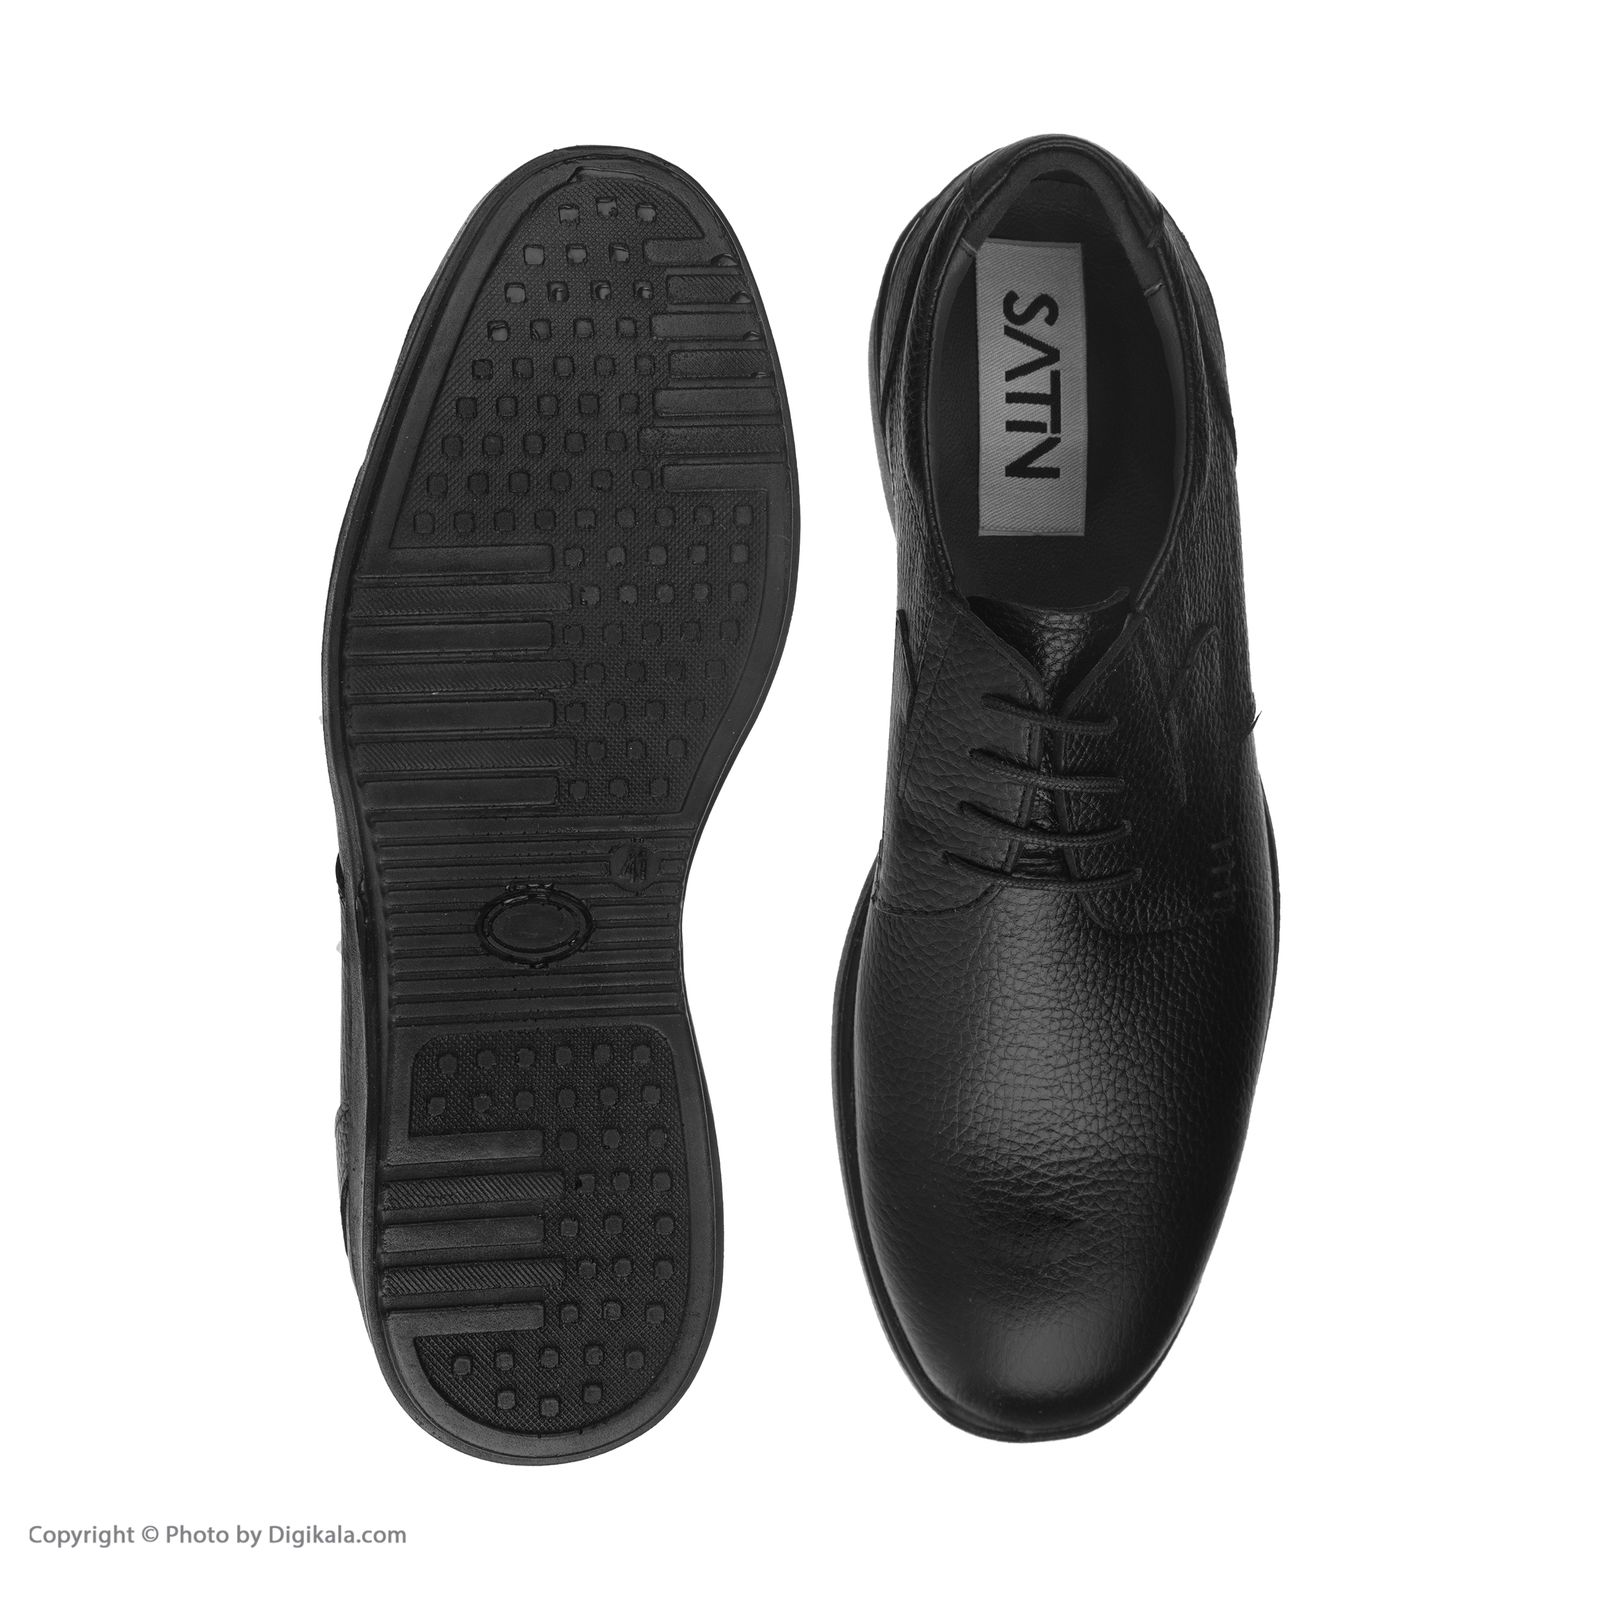  کفش روزمره مردانه ساتین مدل 7249b503101 -  - 3